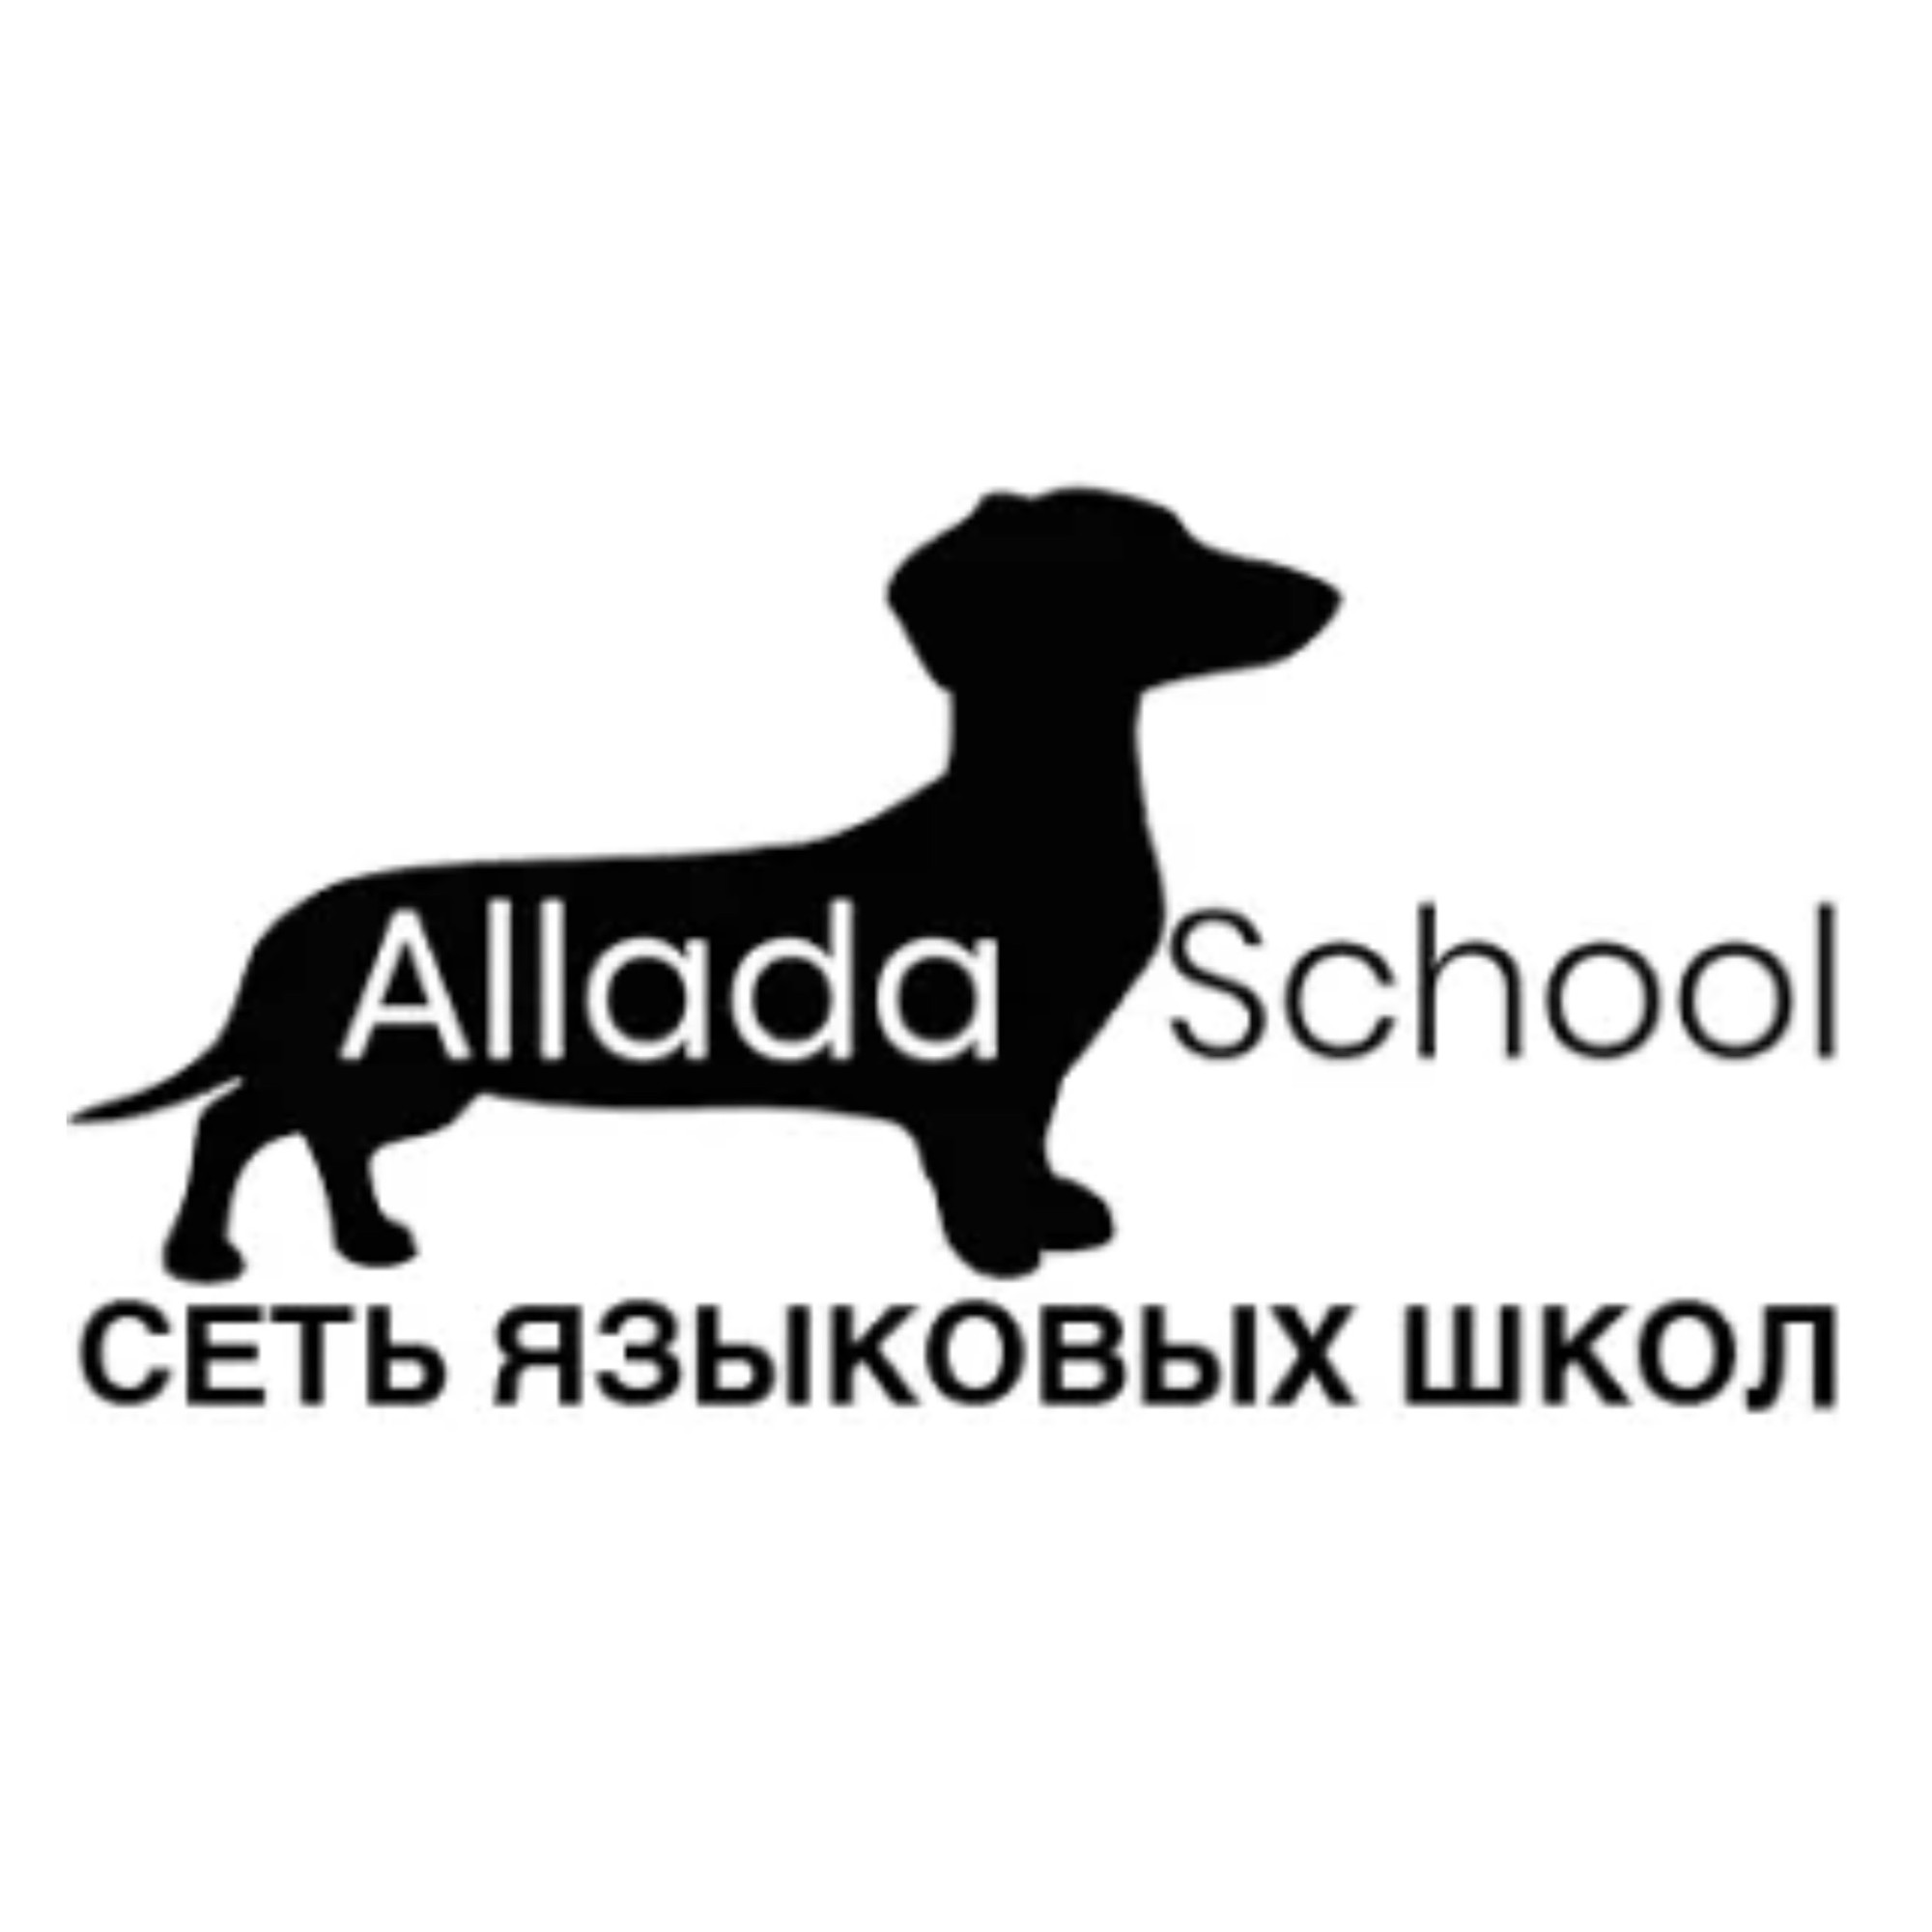 Сеть языковых школ "Allada School"